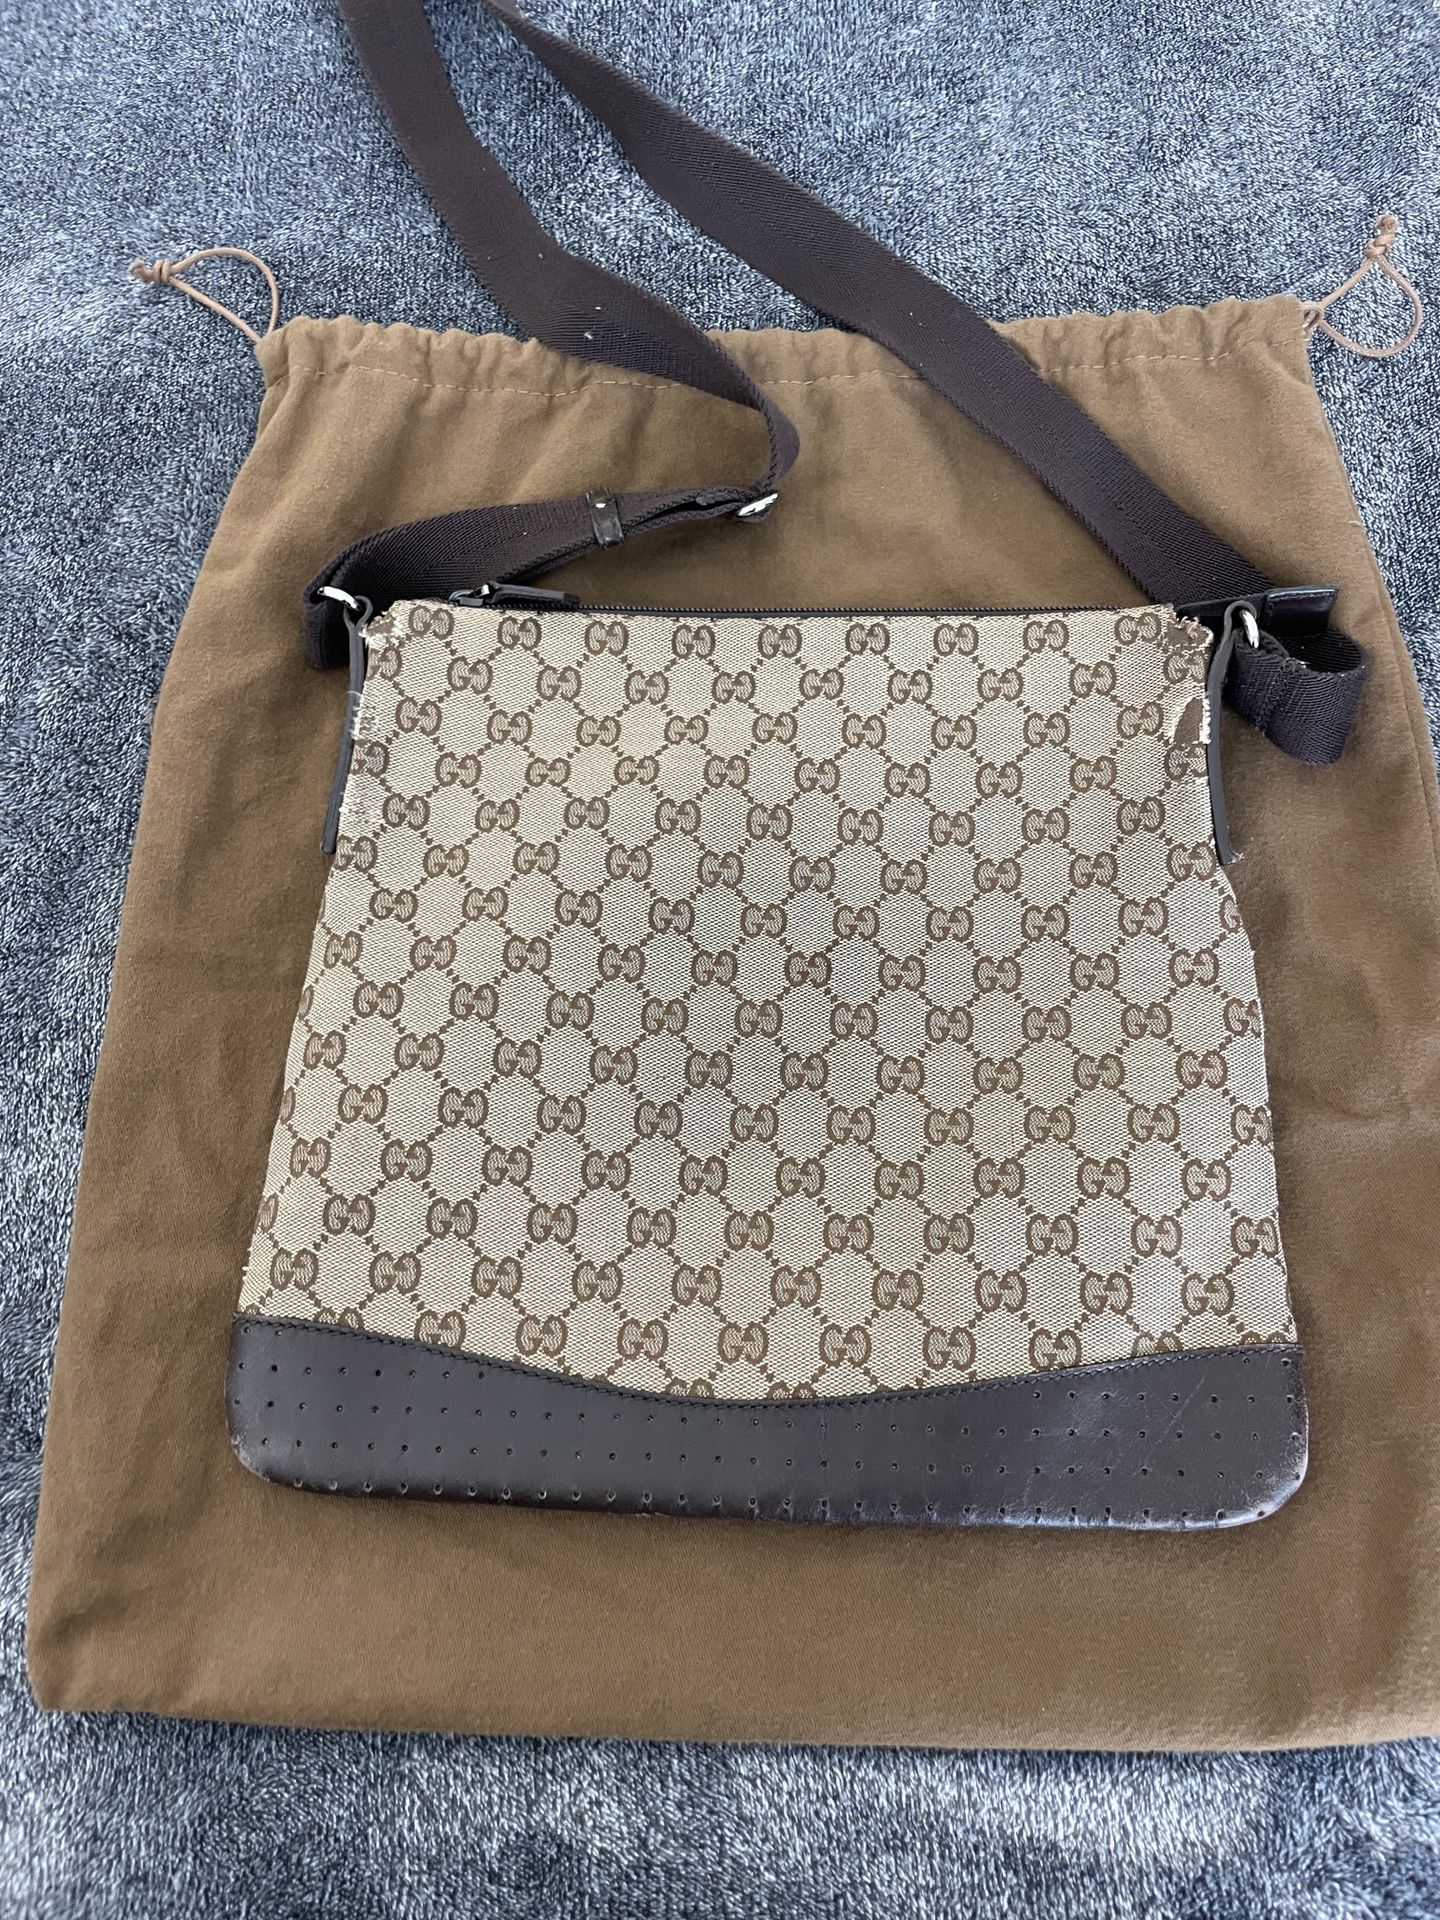 Gucci Messenger Bag Authentic